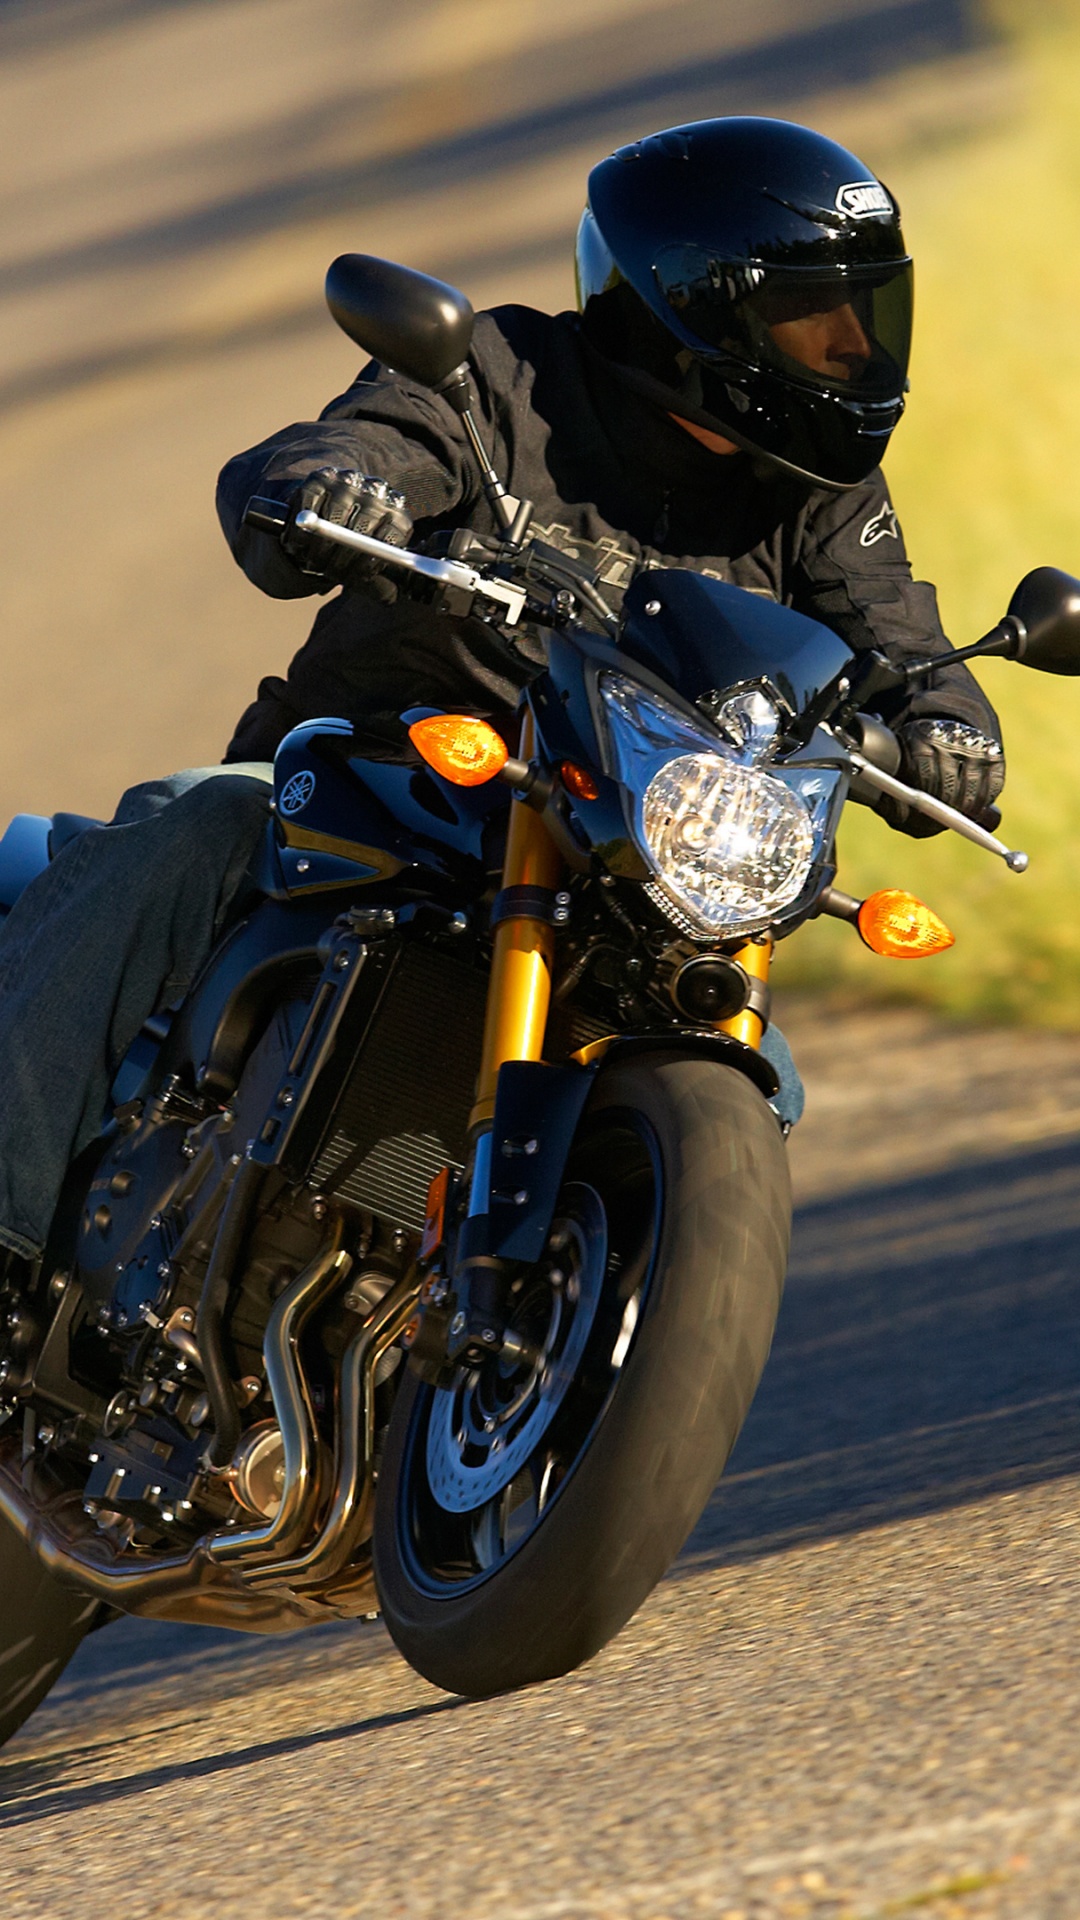 Hombre de Chaqueta Negra Montando en Motocicleta Negra en la Carretera Durante el Día. Wallpaper in 1080x1920 Resolution